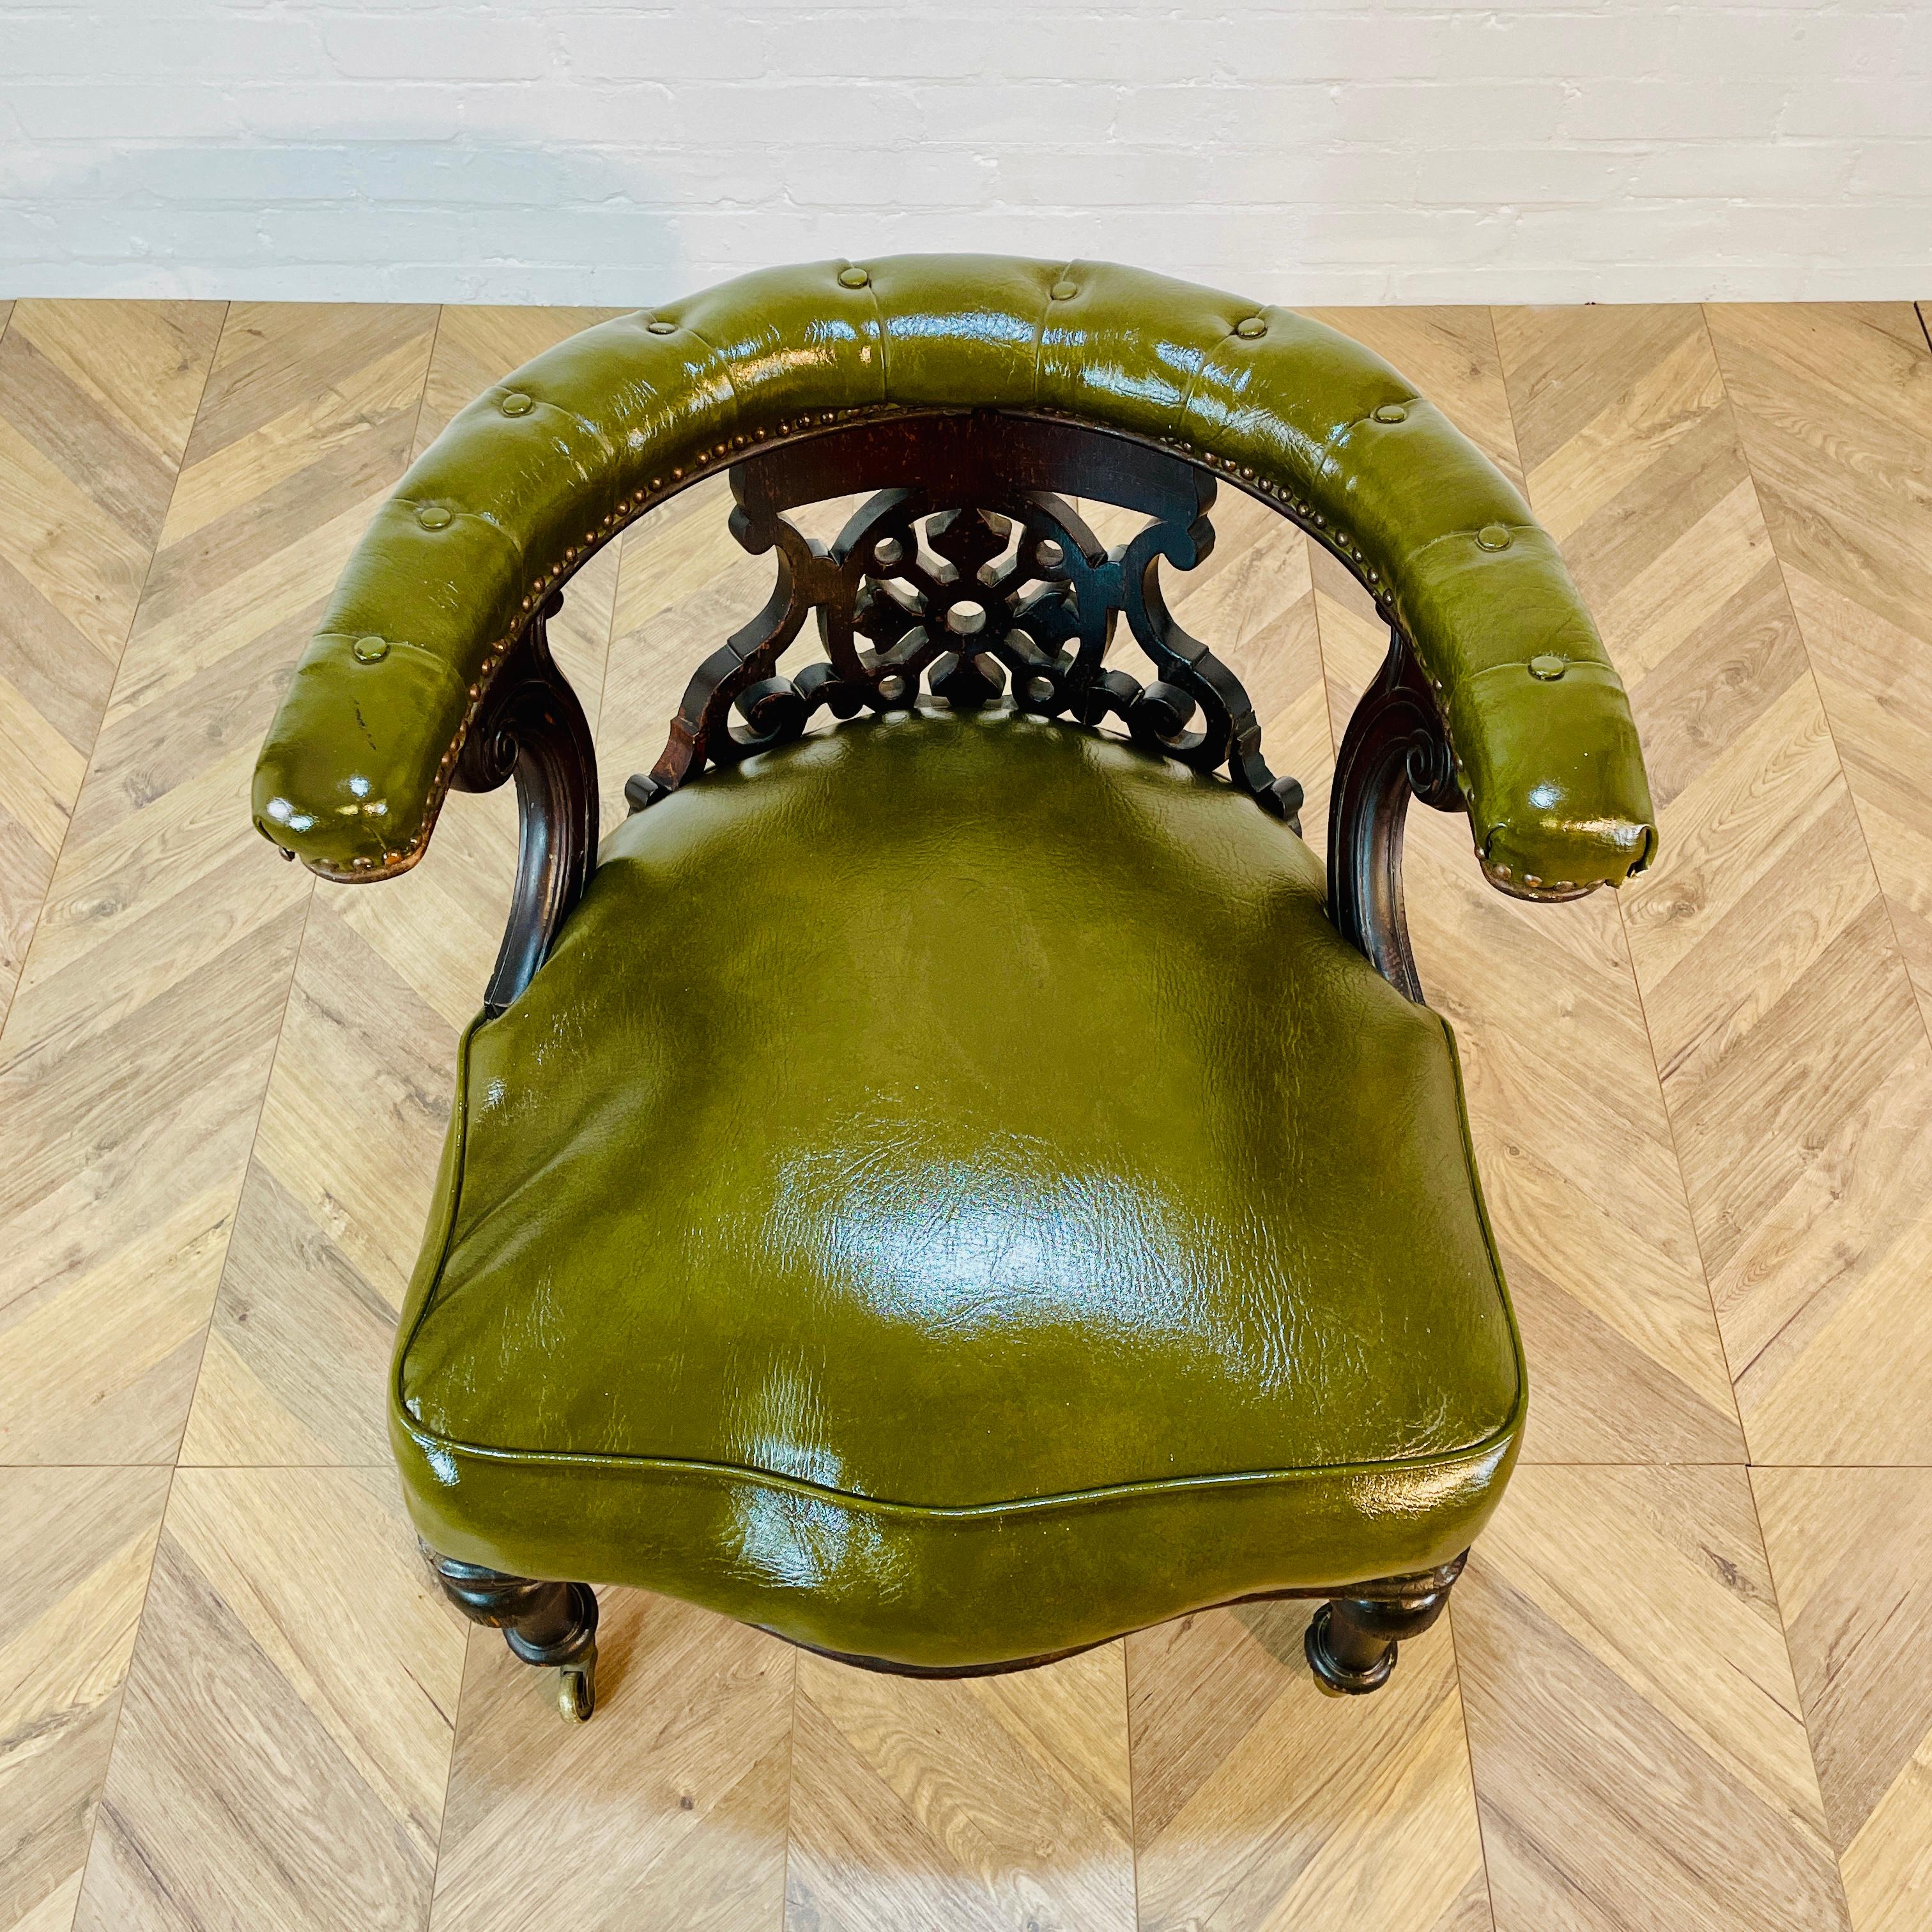 Chaise de bibliothèque/de bureau anglaise ancienne de bonne qualité en acajou et cuir vert sur roulettes en laiton, vers le 19e siècle.

La chaise est super confortable et le revêtement en cuir est en très bon état, sans déchirures.

La chaise